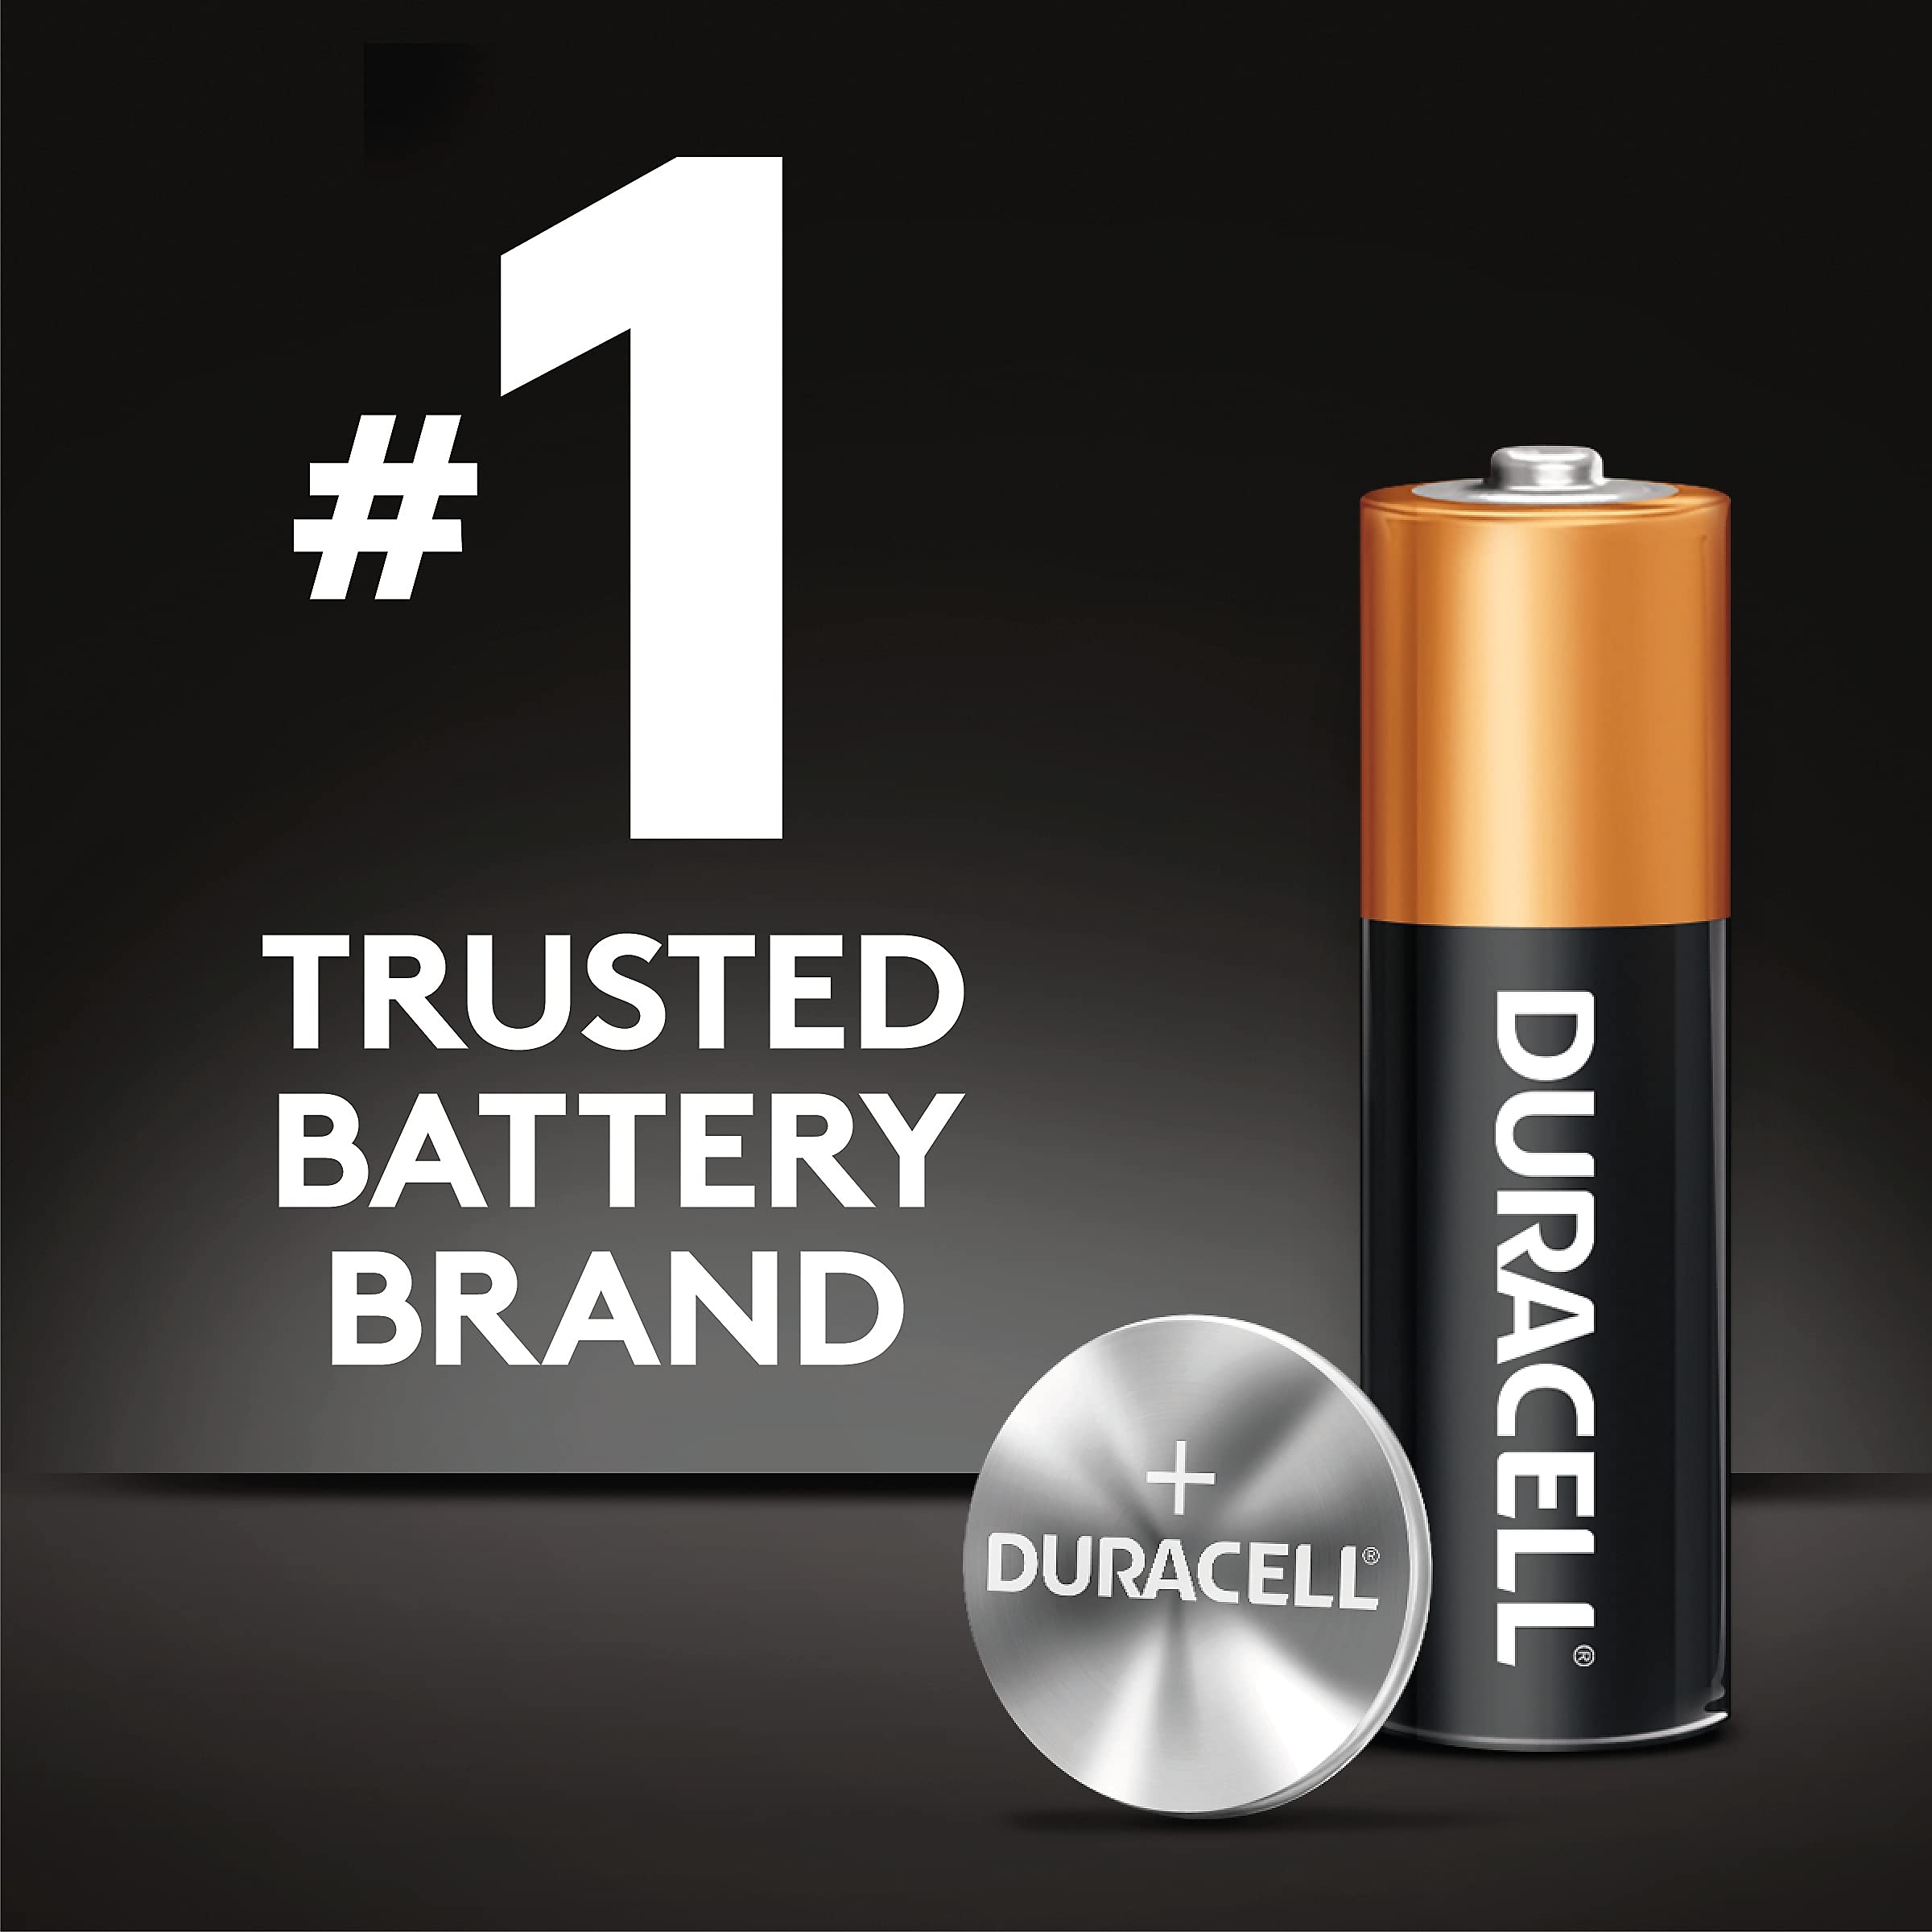 Duracell 389/390 Silver Oxide Button Battery 1-Count (DURMND389BPK)